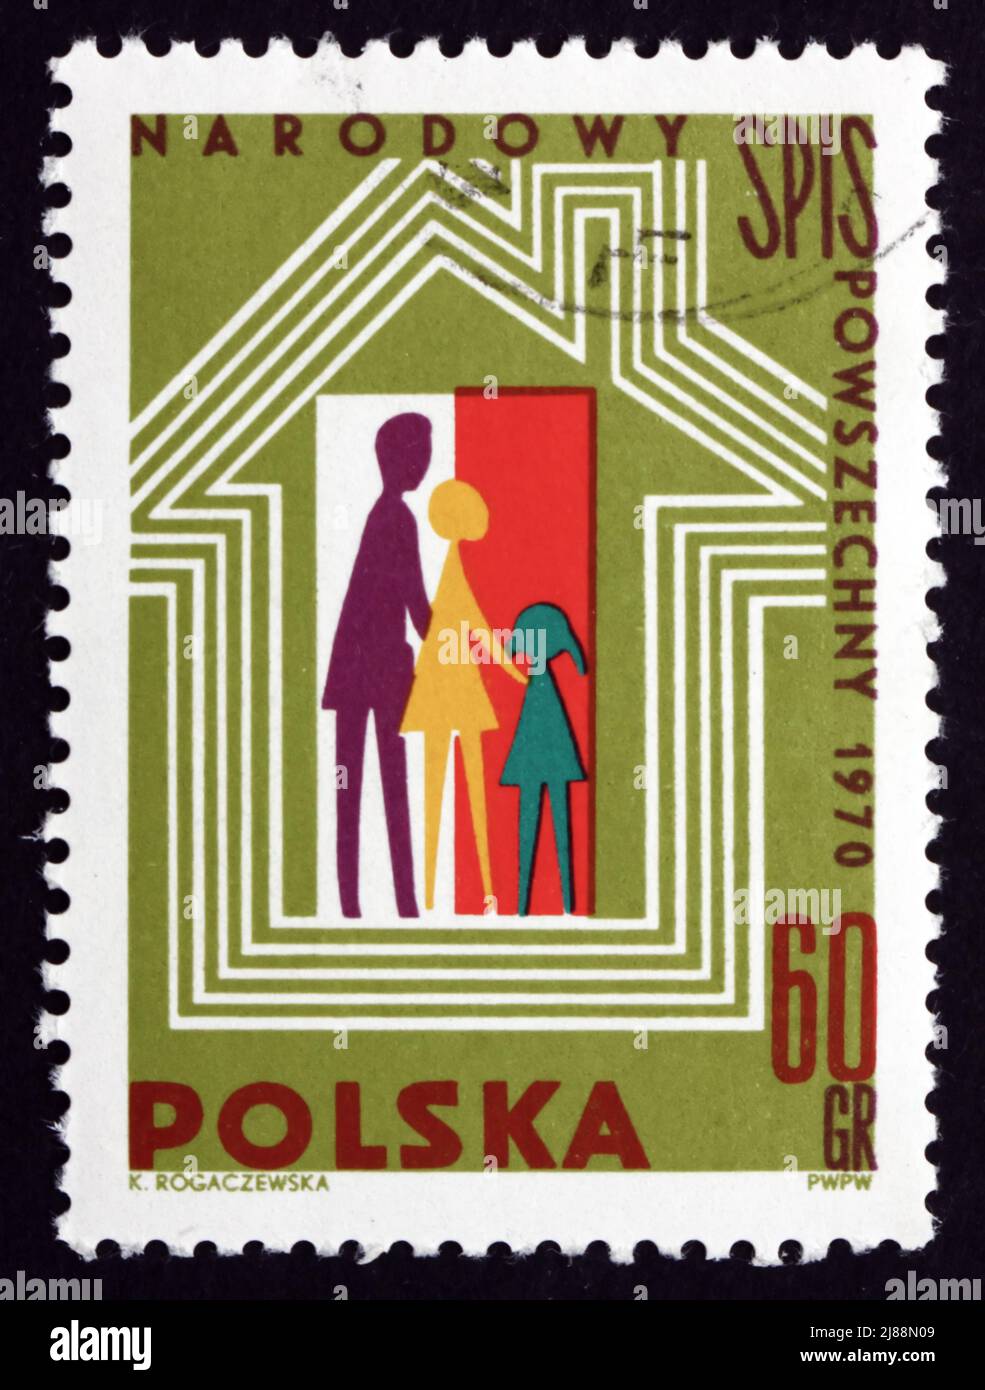 POLOGNE - VERS 1970 : un timbre imprimé en Pologne montre la famille, le foyer et le drapeau polonais, recensement national polonais, 1970, vers 1970 Banque D'Images